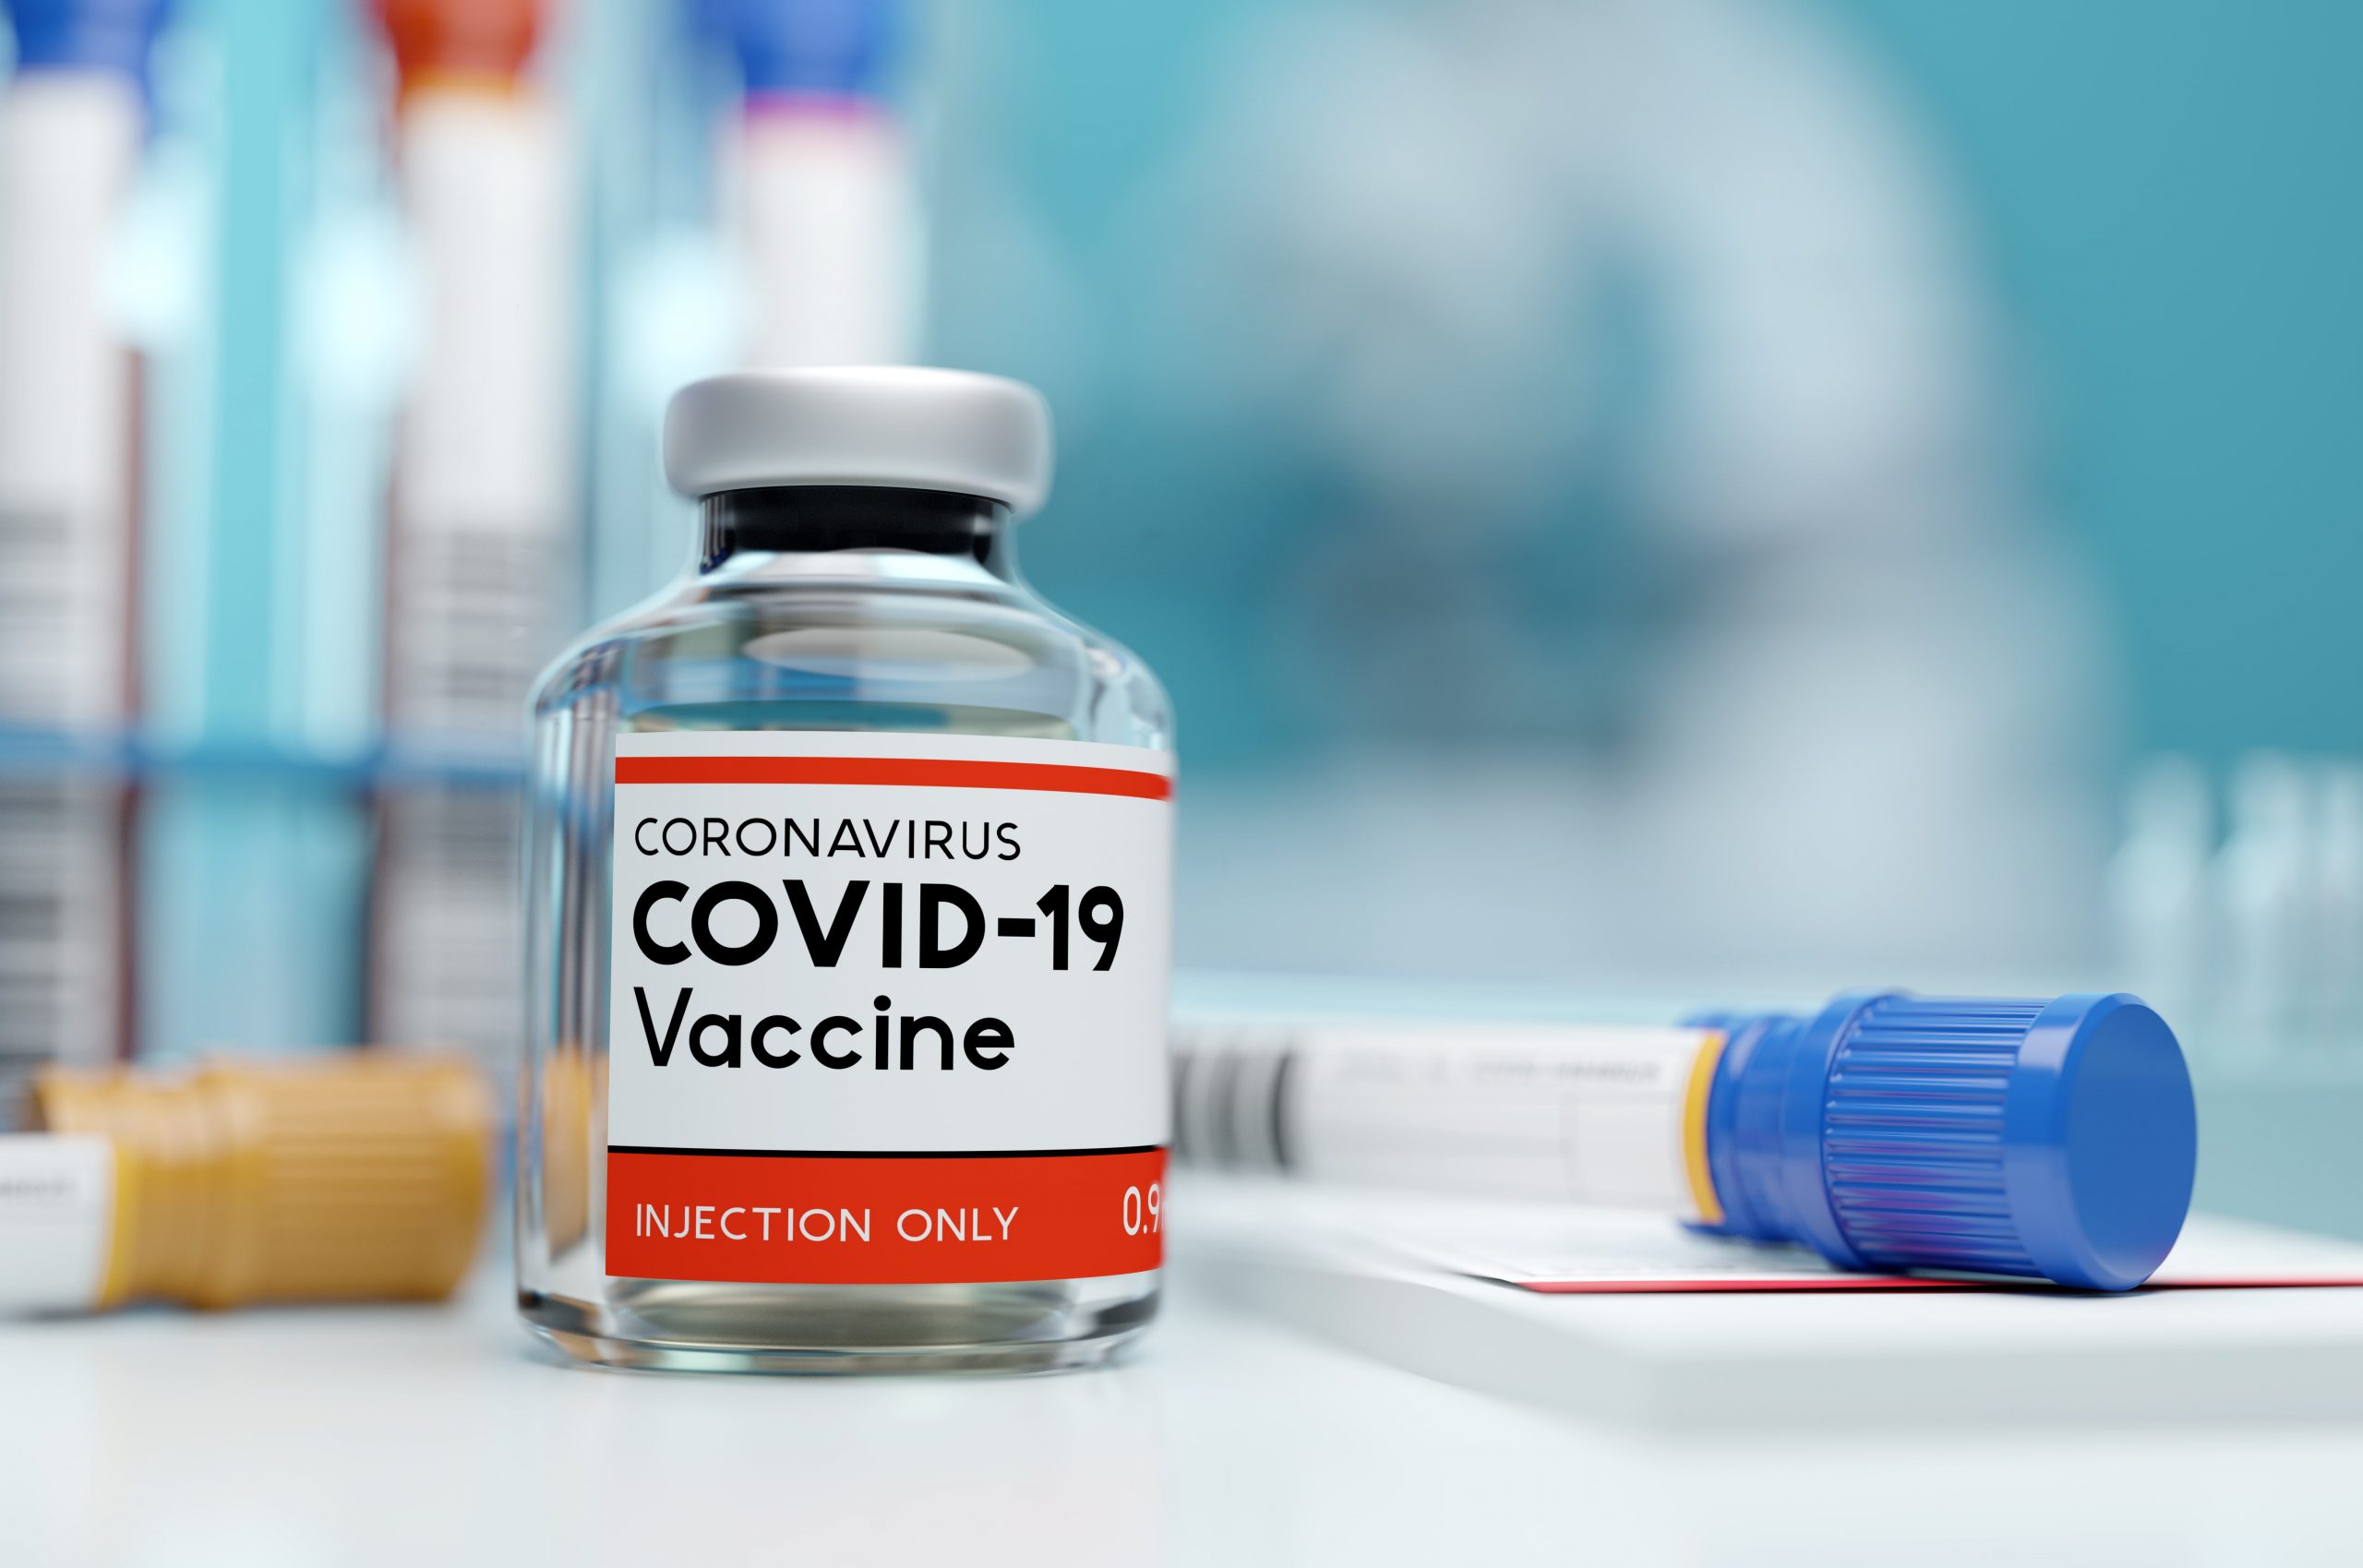 szczepionka przeciw Covid-19, fot. Shutterstock